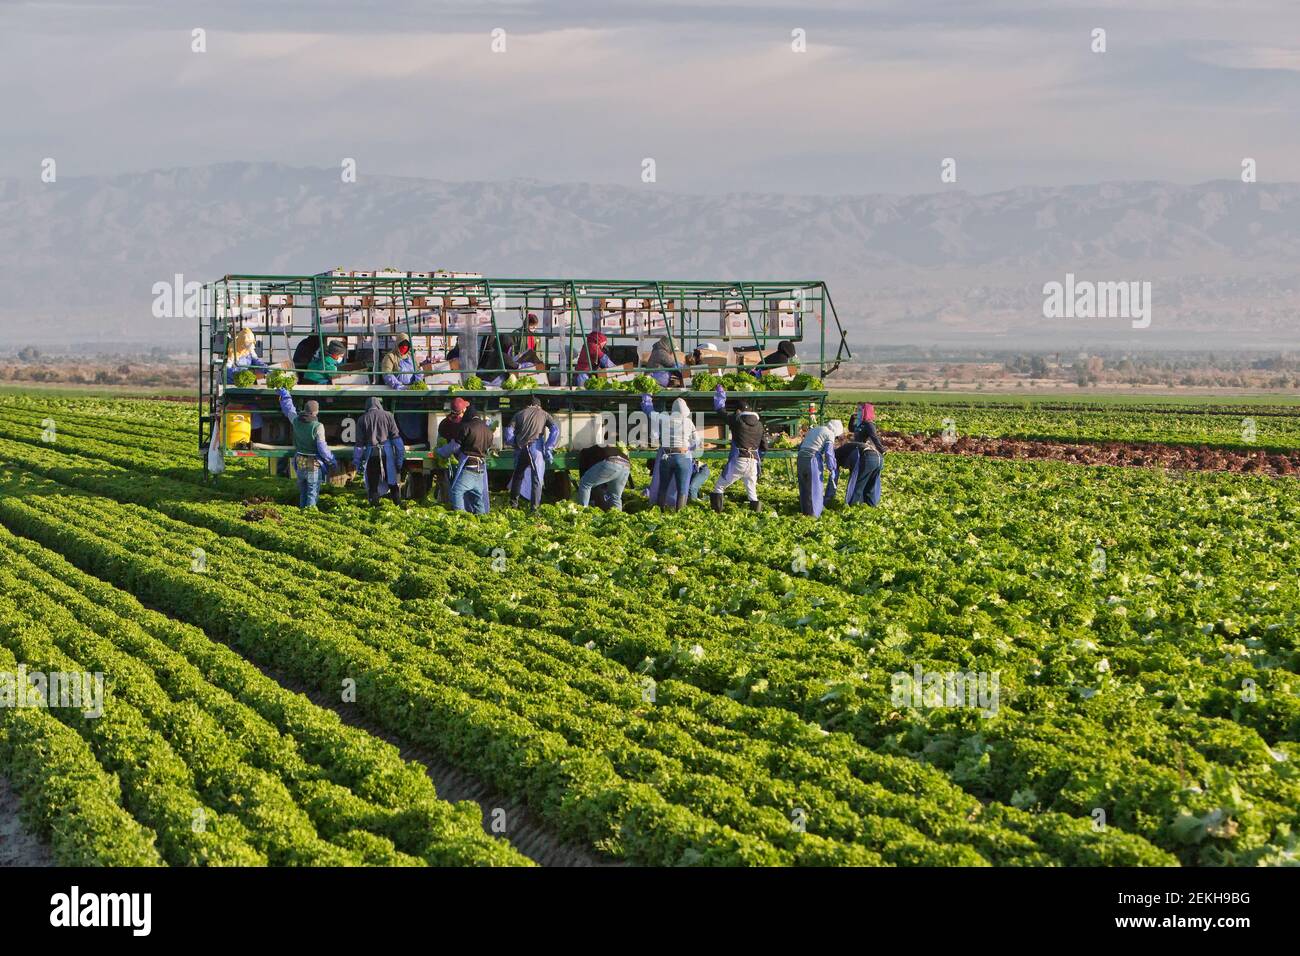 Les travailleurs hispaniques récoltent de la laitue verte biologique. Banque D'Images